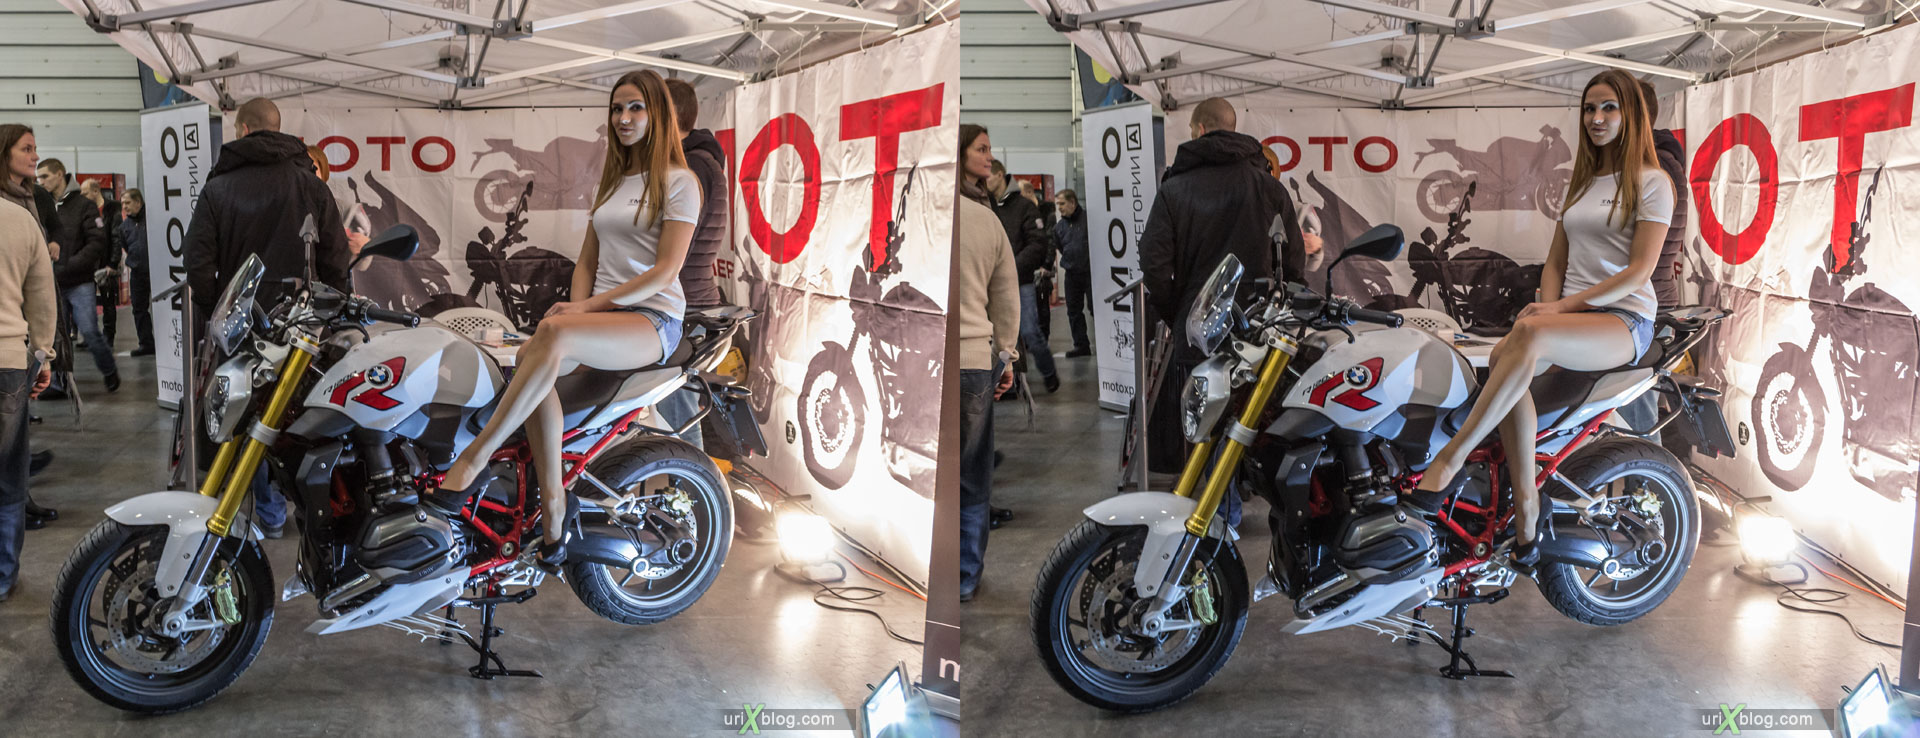 Мото парк, мотоциклы, девушка, модель, выставка, Москва, Россия, Крокус Экспо, 3D, перекрёстная стереопара, стерео, стереопара, 2015